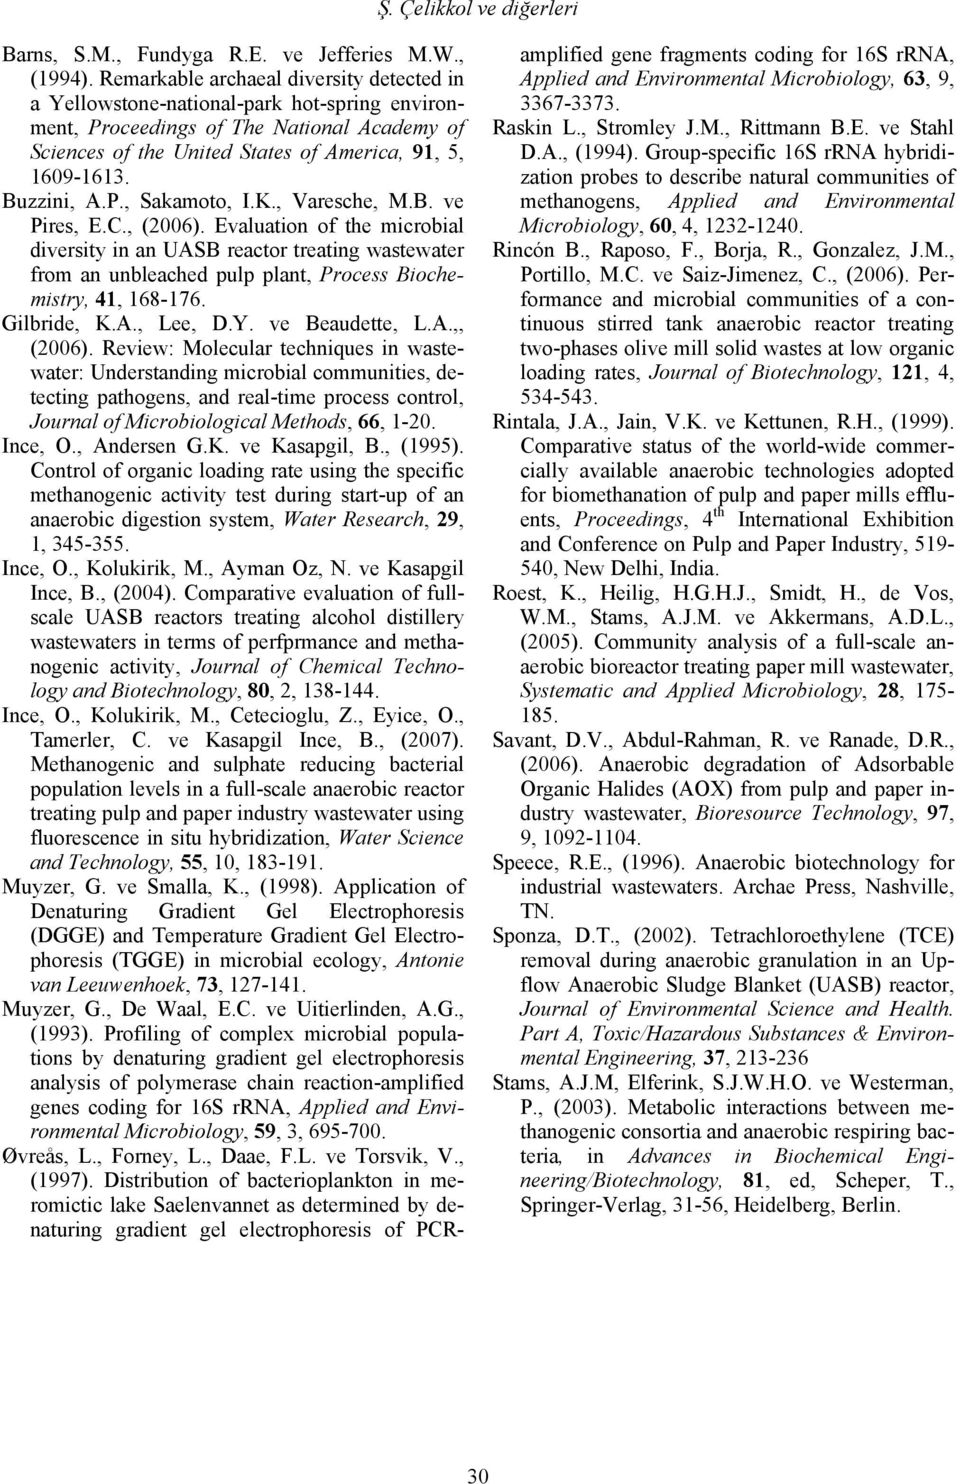 Buzzini, A.P., Sakamoto, I.K., Varesche, M.B. ve Pires, E.C., (2006).